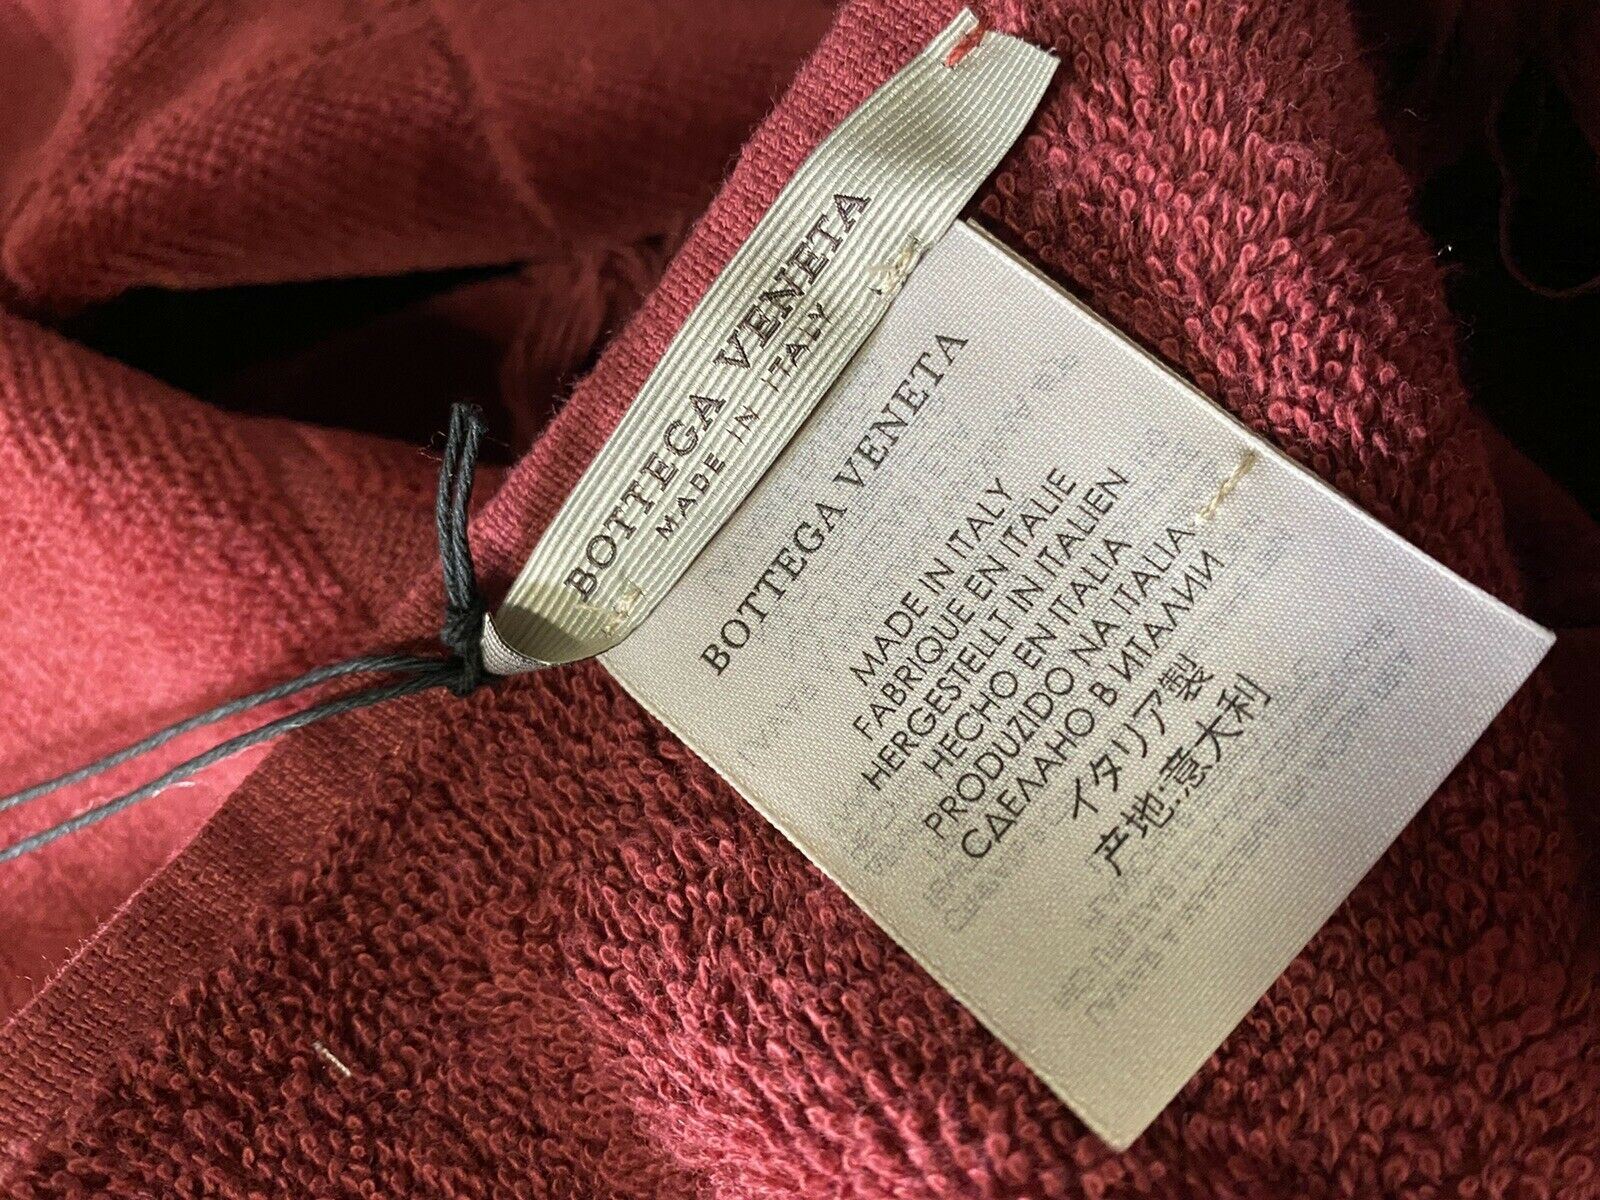 Хлопковое банное/пляжное полотенце бордового цвета Bottega Veneta, 70 x 39,5, производство Италия.